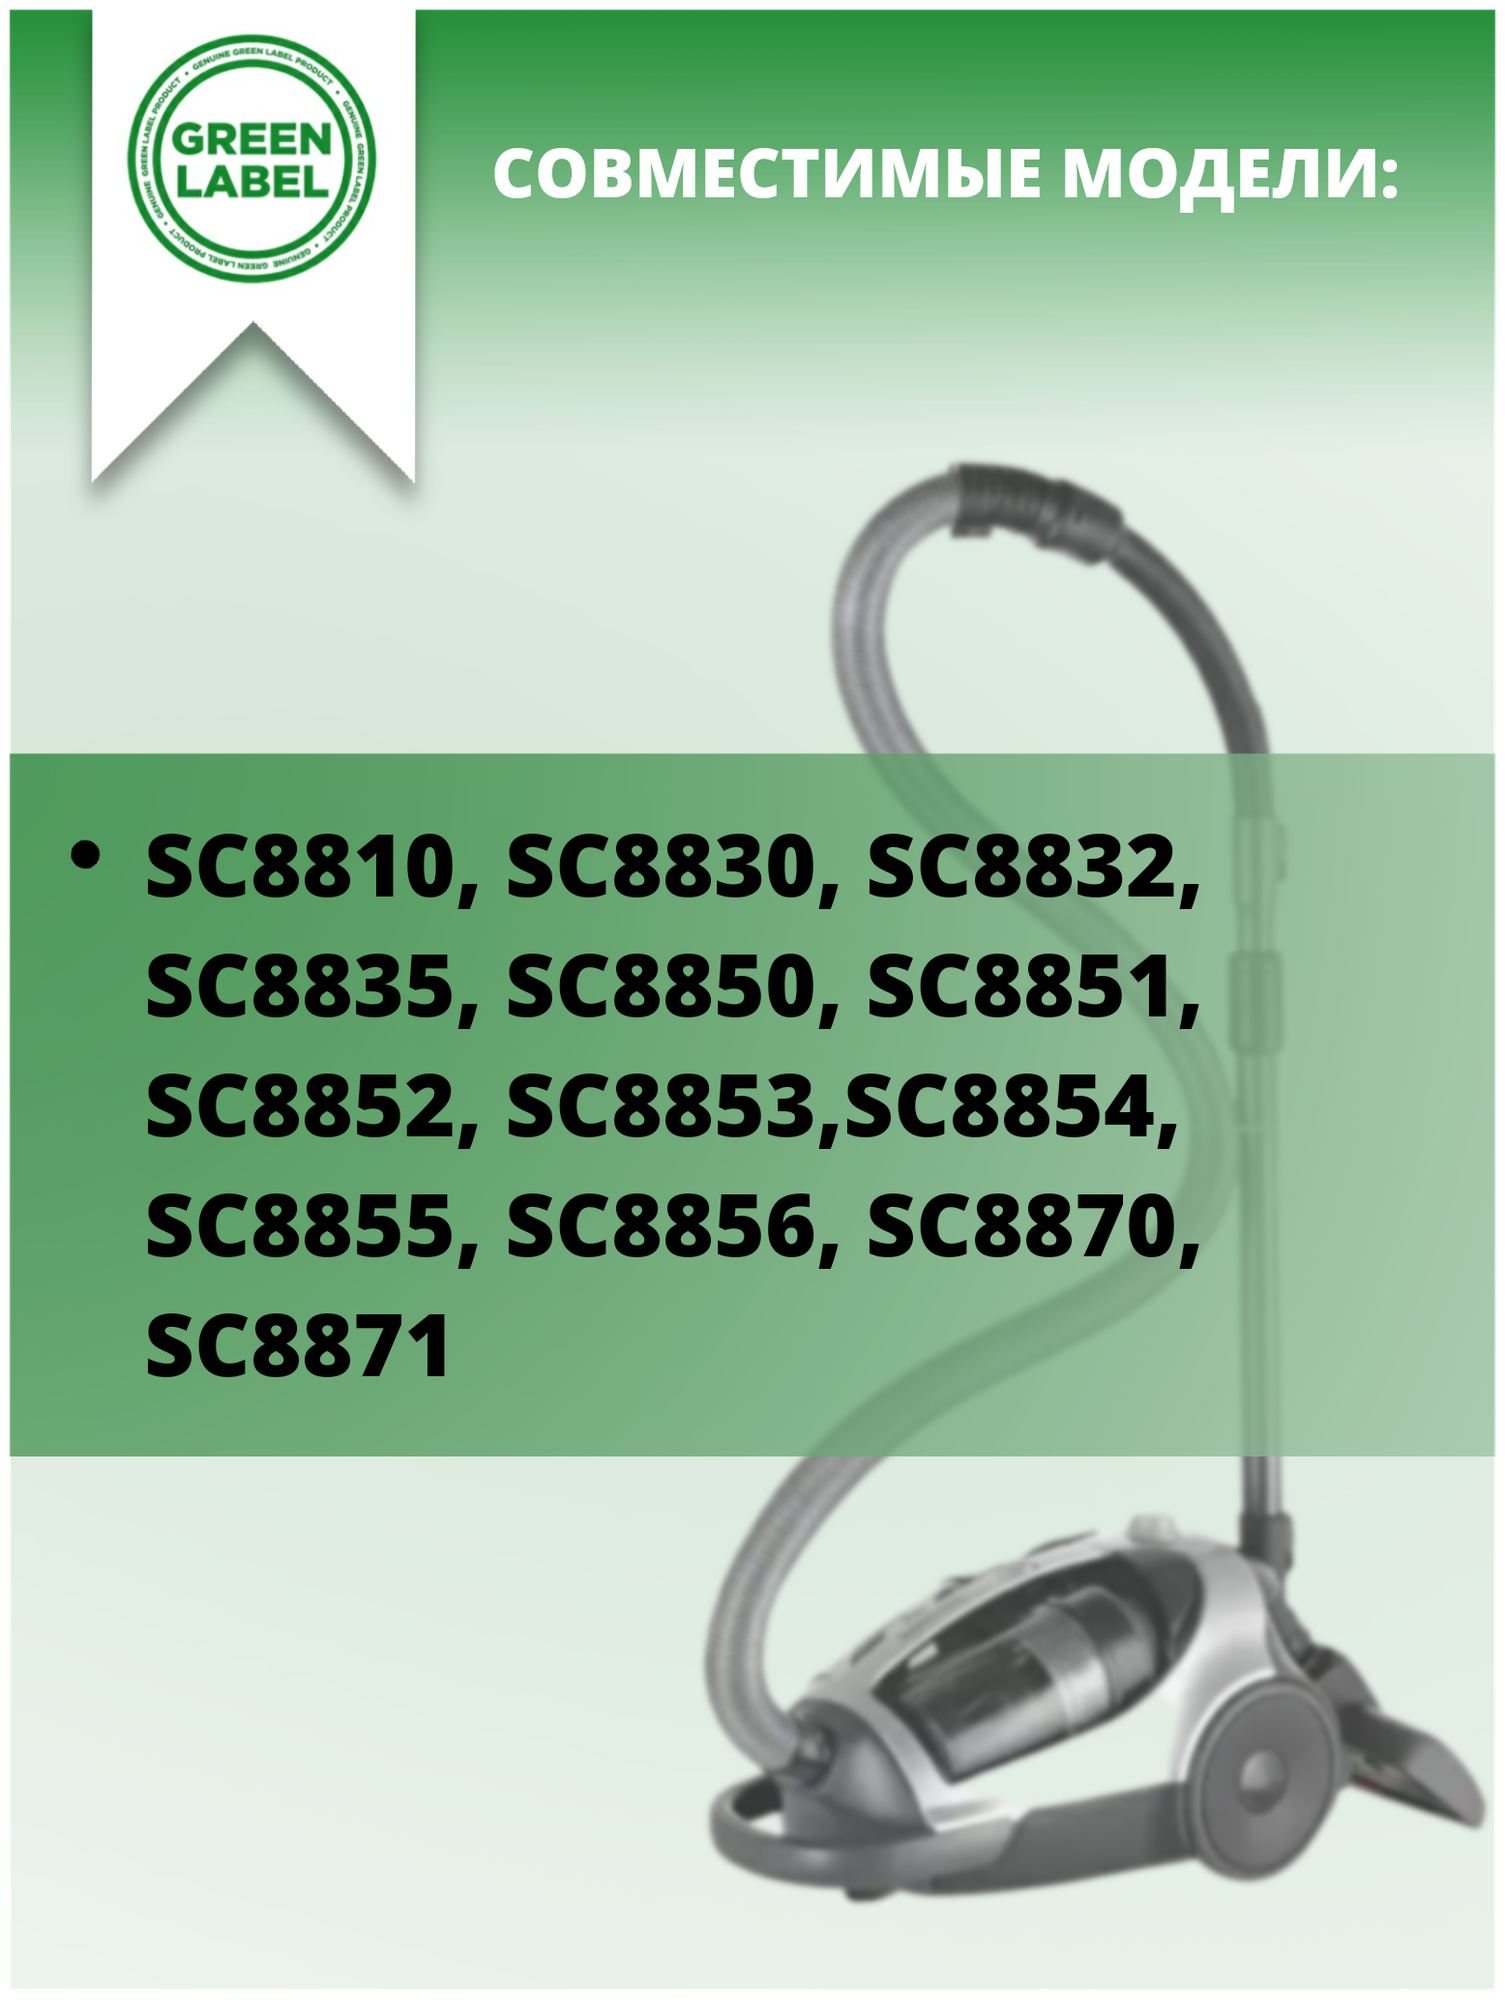 Green Label, нера фильтр DJ97-0167C для пылесосов Samsung серий SC 88*** Super Twin Chamber, SC 88*** Rambo SC8810, SC8830, SC8832, SC8835, и др - фотография № 3